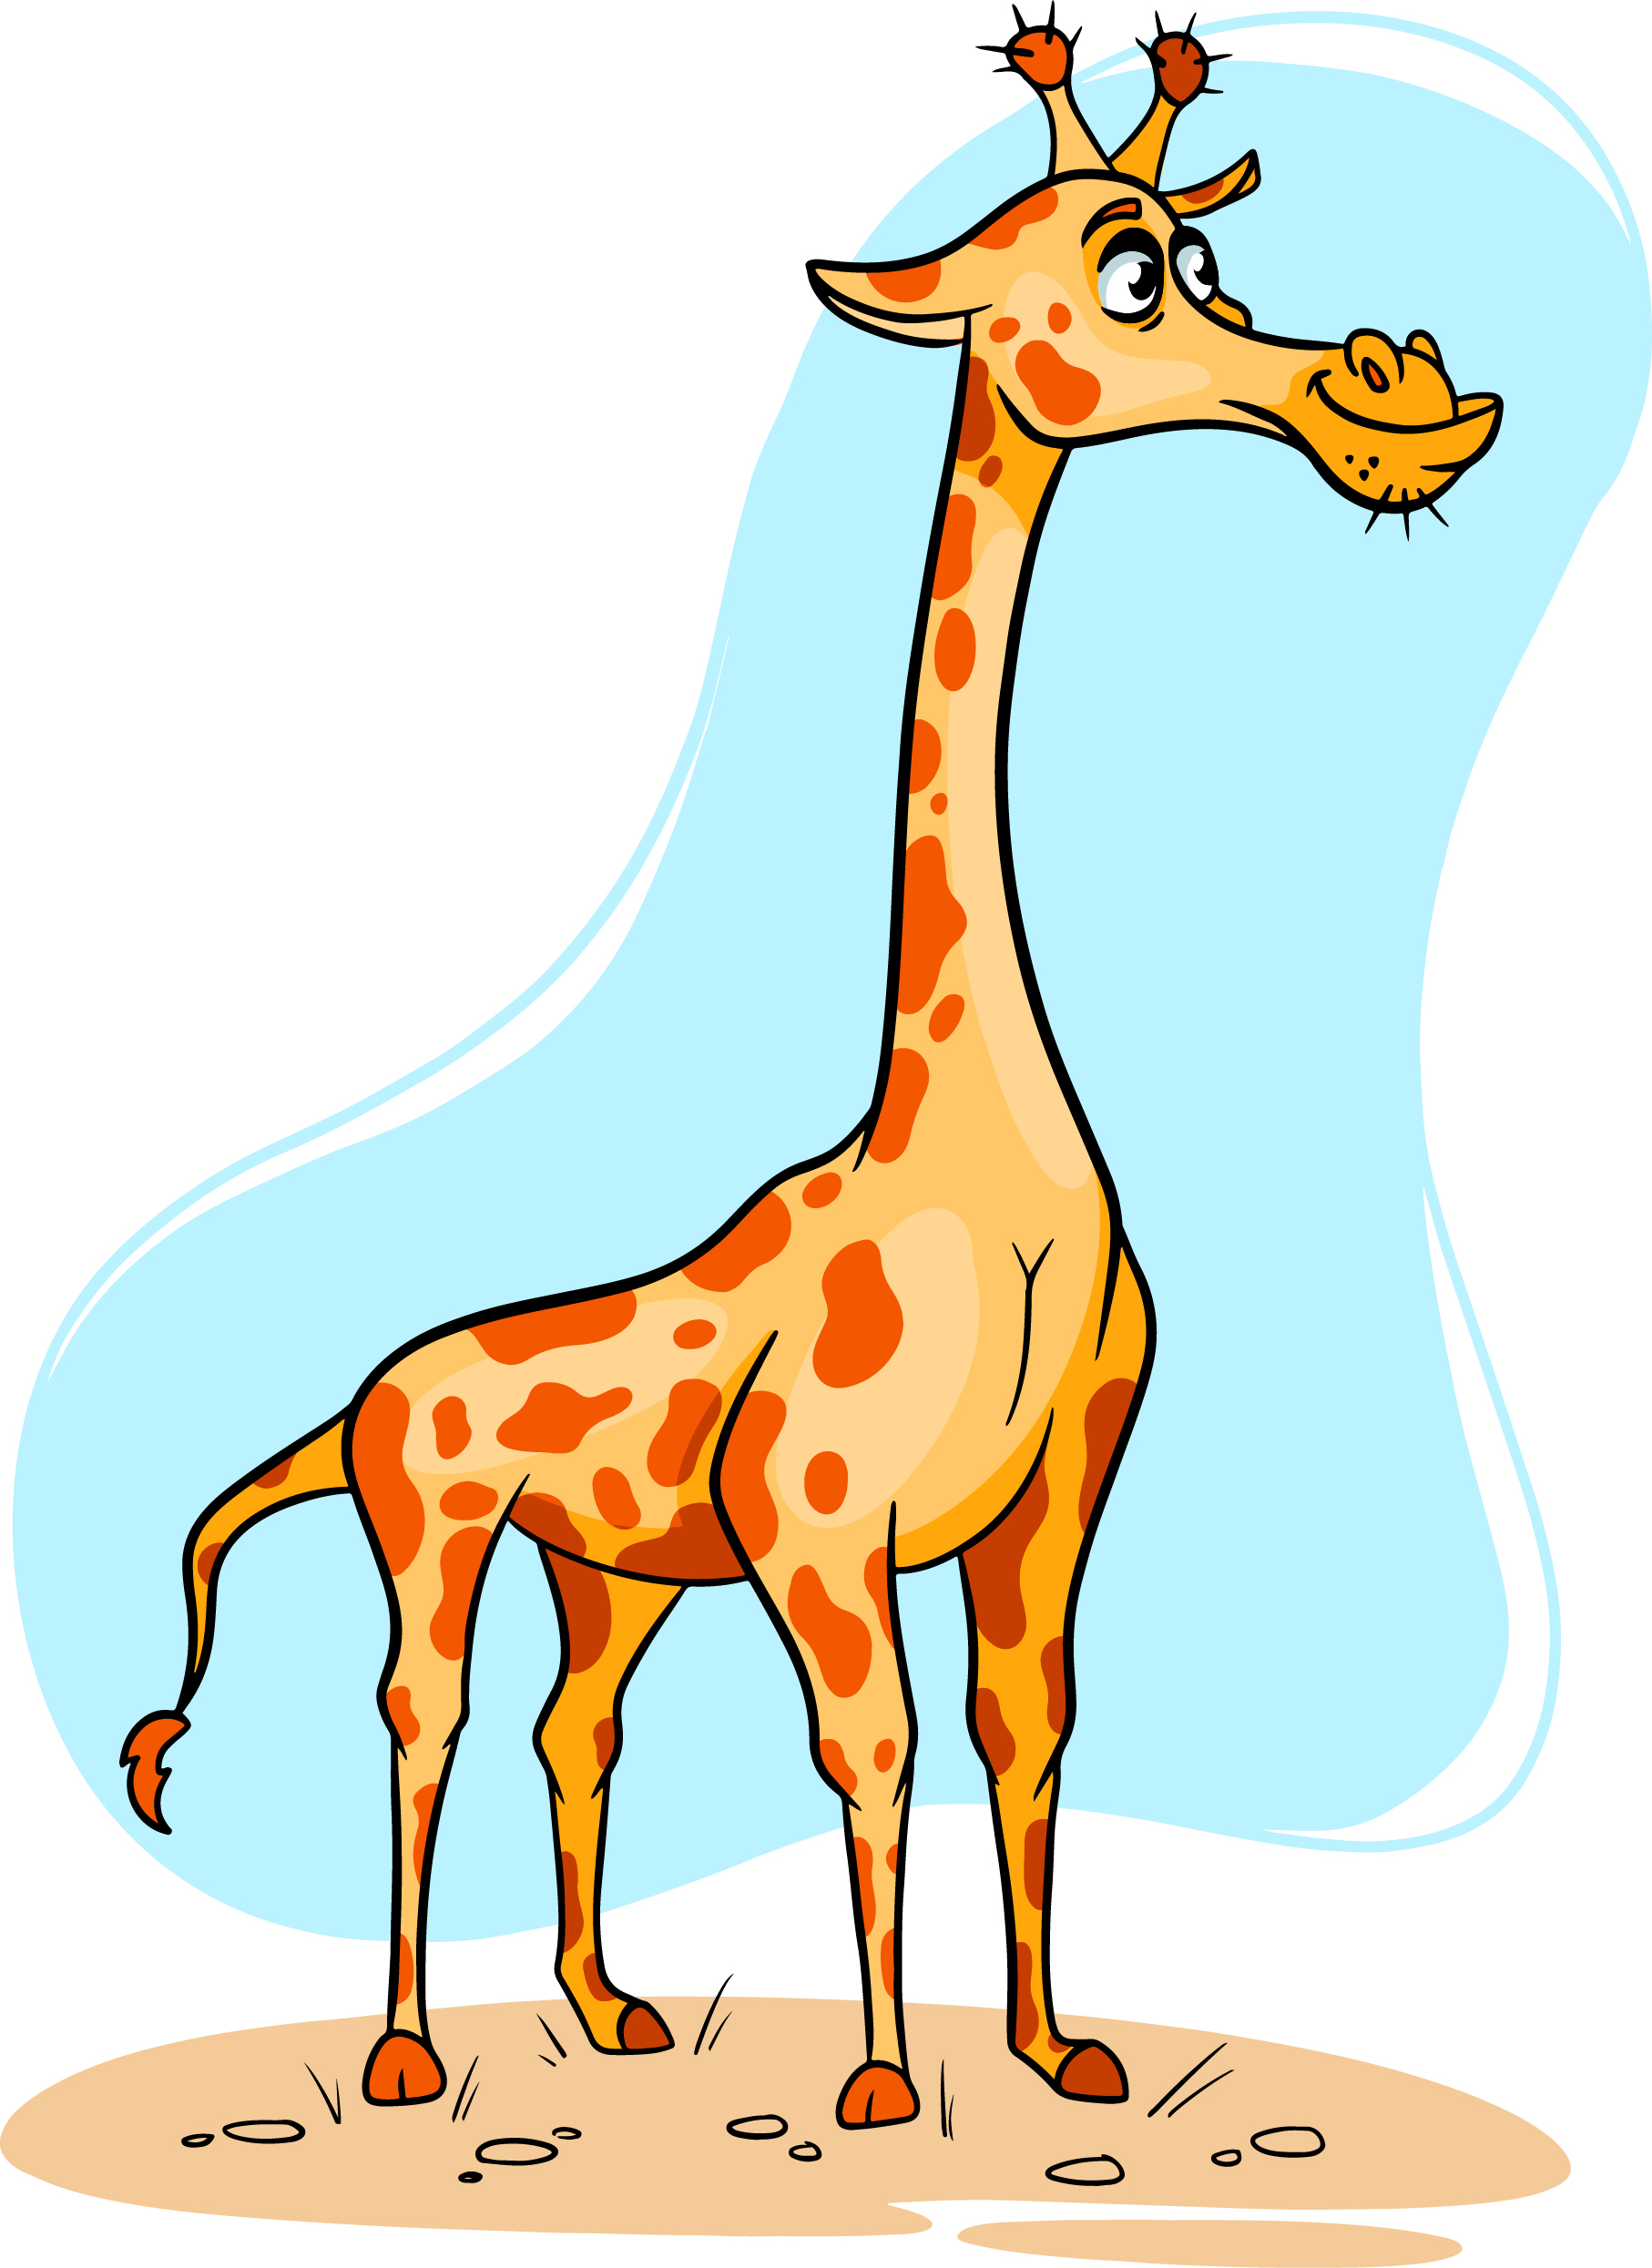 Образец раскрашенной картинки большой забавный жираф